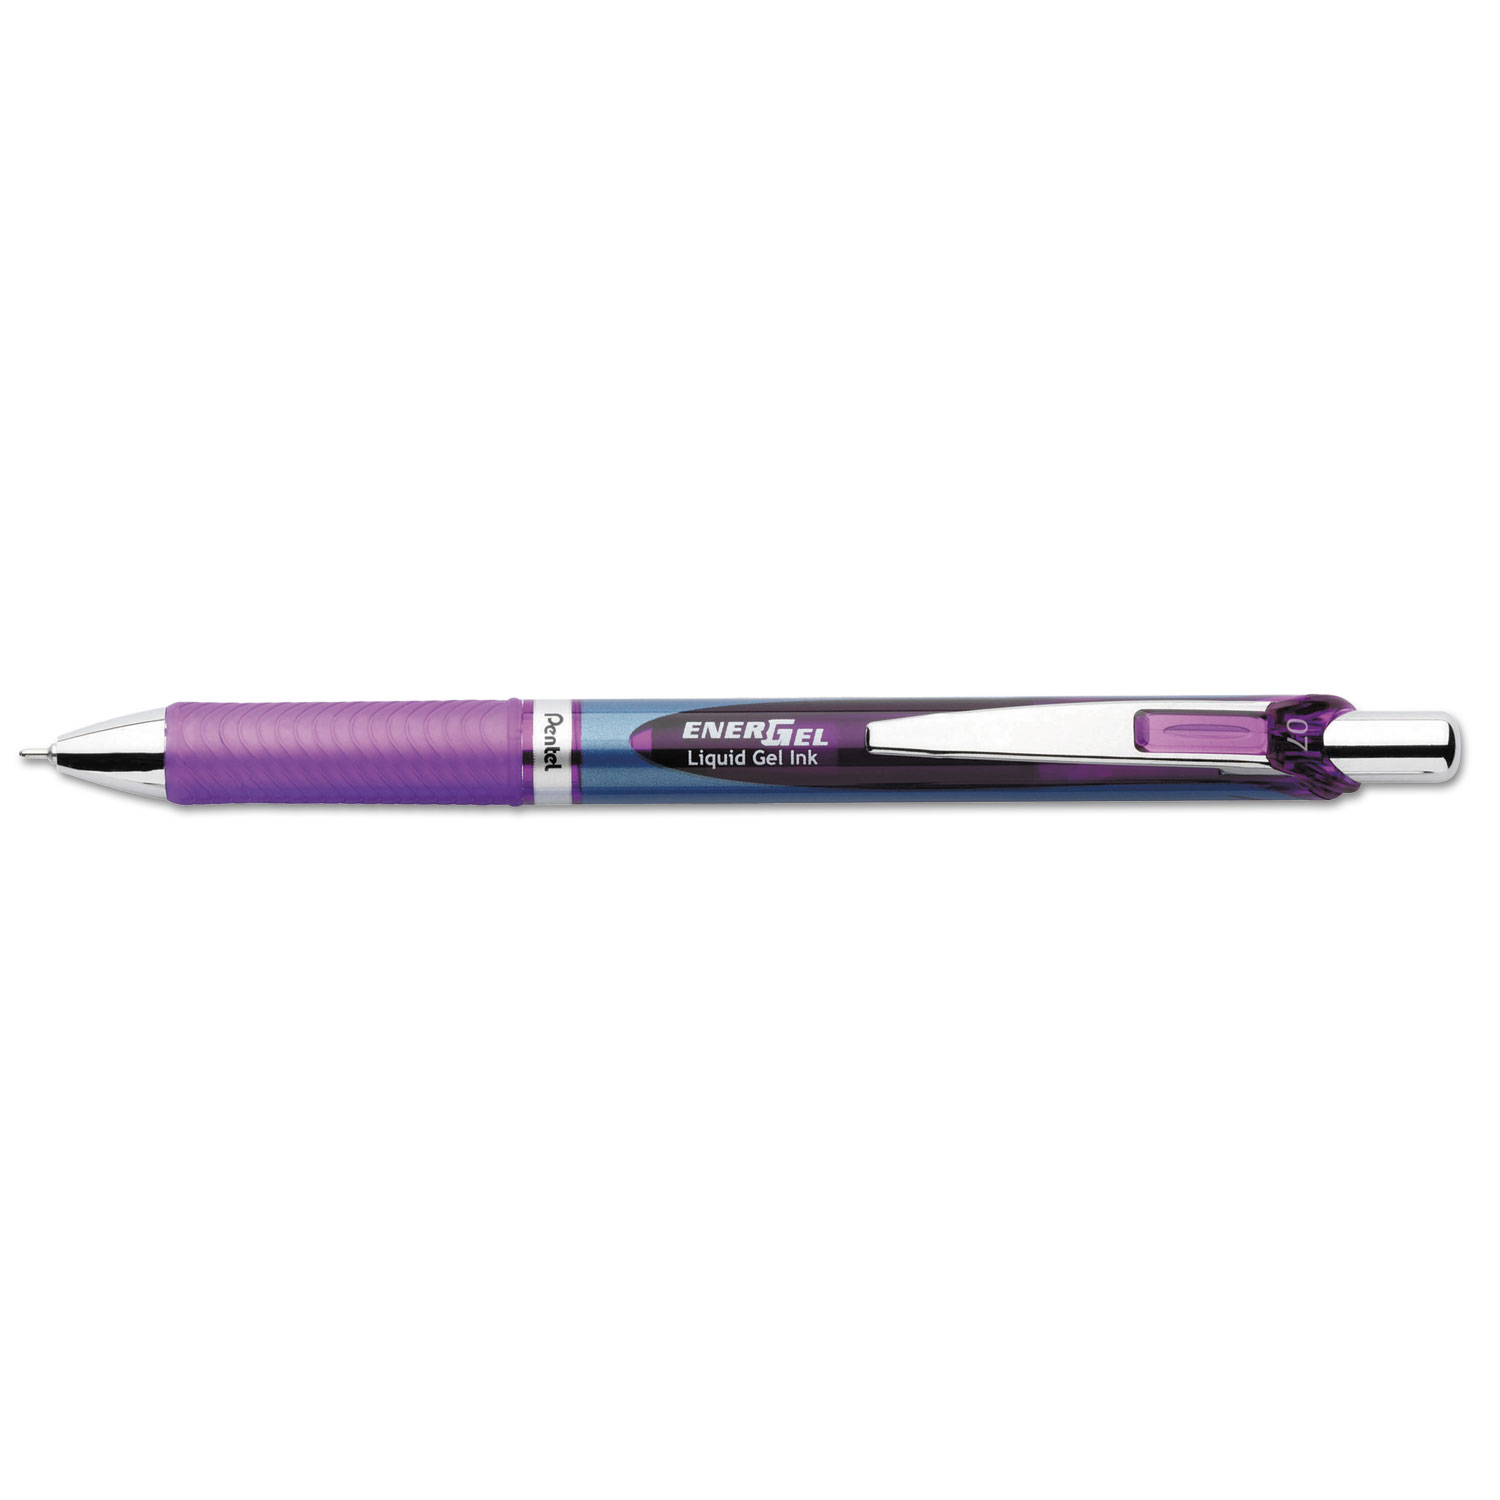 EnerGel RTX Retractable Liquid Gel Pen, .7mm, Needle, Bk/Gray Barrel, Violet Ink